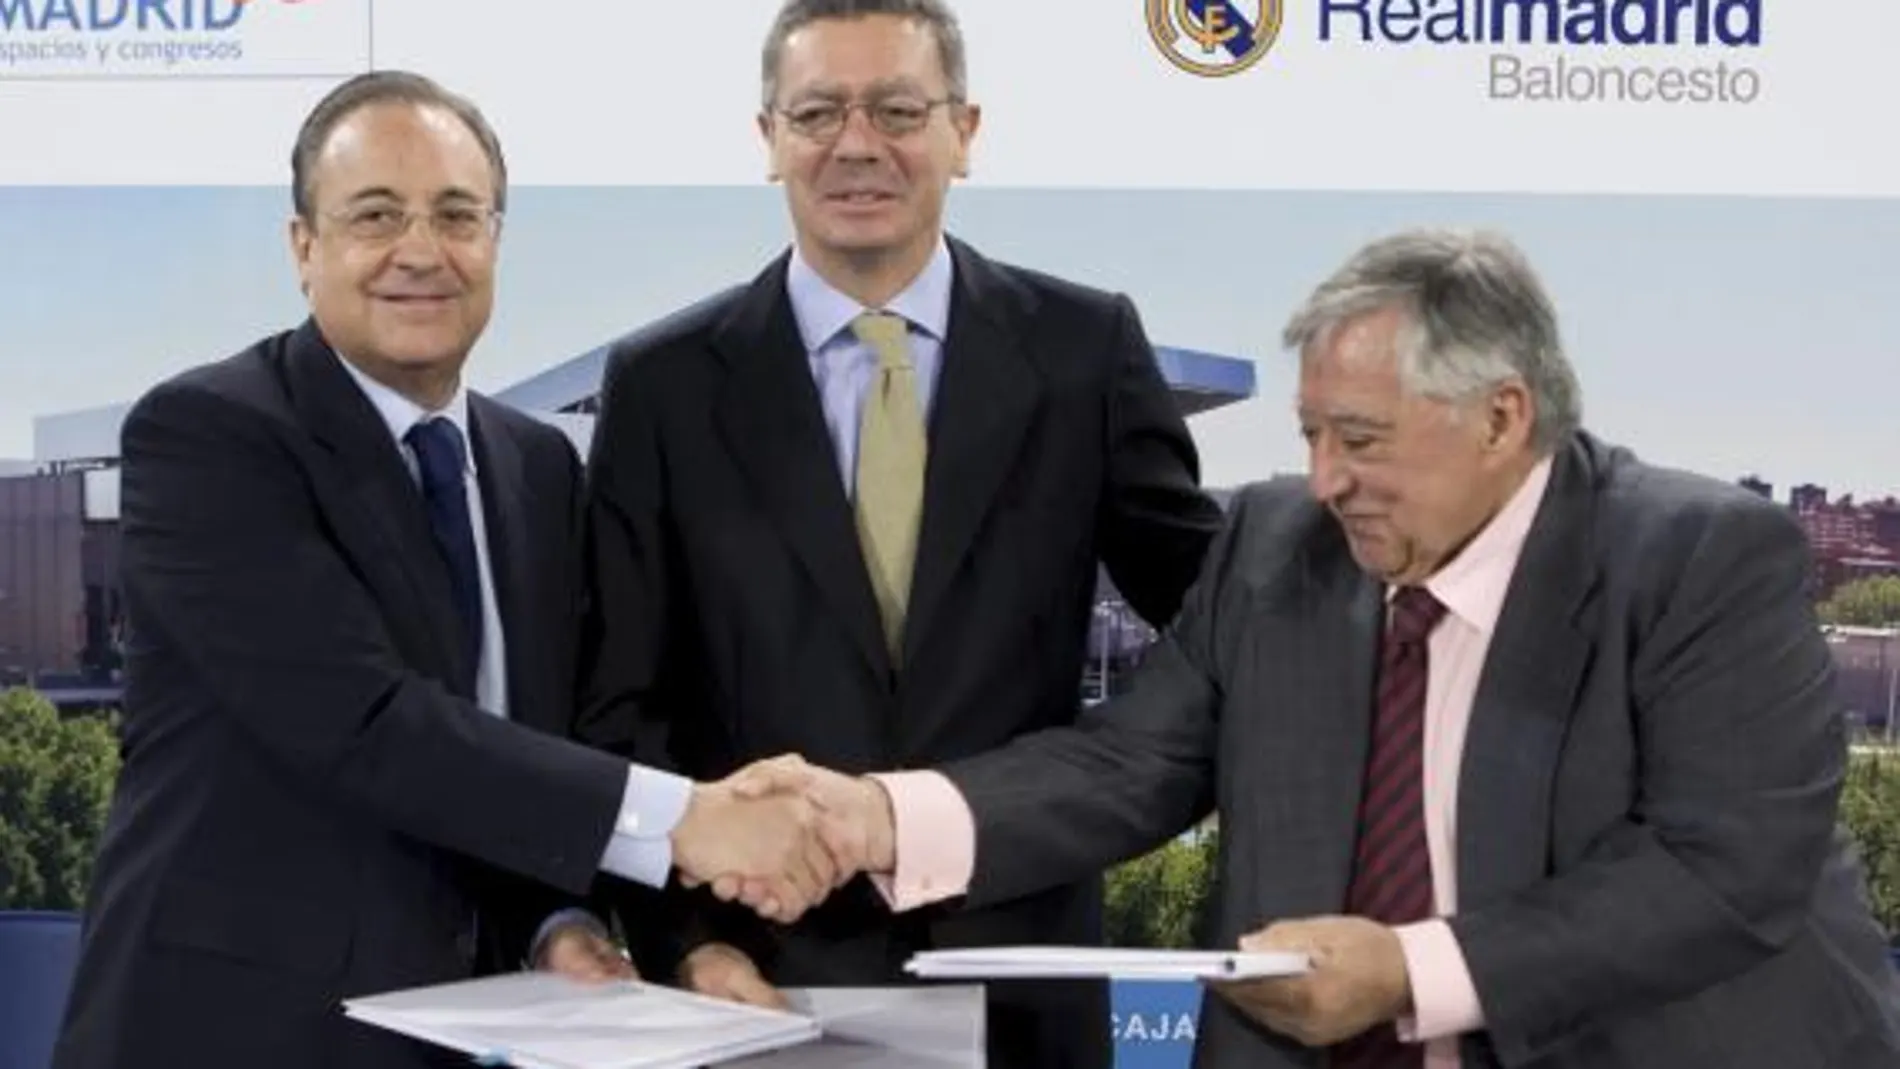 El presidente del Real Madrid, Florentino Pérez, junto al alcalde de Madrid, Alberto Ruiz Gallardón, y el presidente de Madrid Espacios y Congresos, Luis Blázquez, durante el acto de firma de un acuerdo